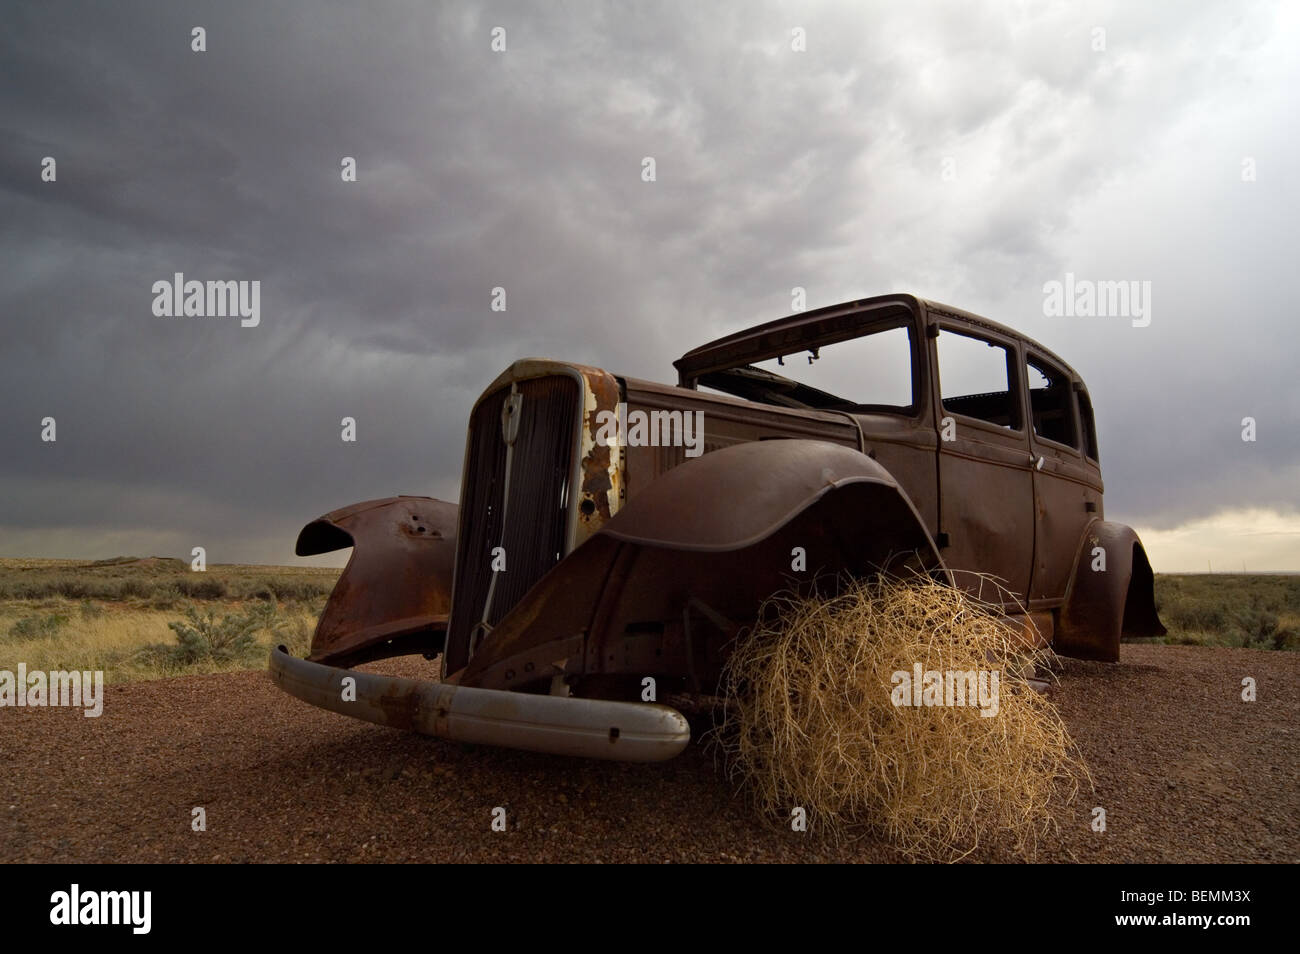 Vieille voiture rouillée et le chardon de Russie / Tumbleweed (Salsola tragus / Salsola iberica) Arizona, États-Unis Banque D'Images